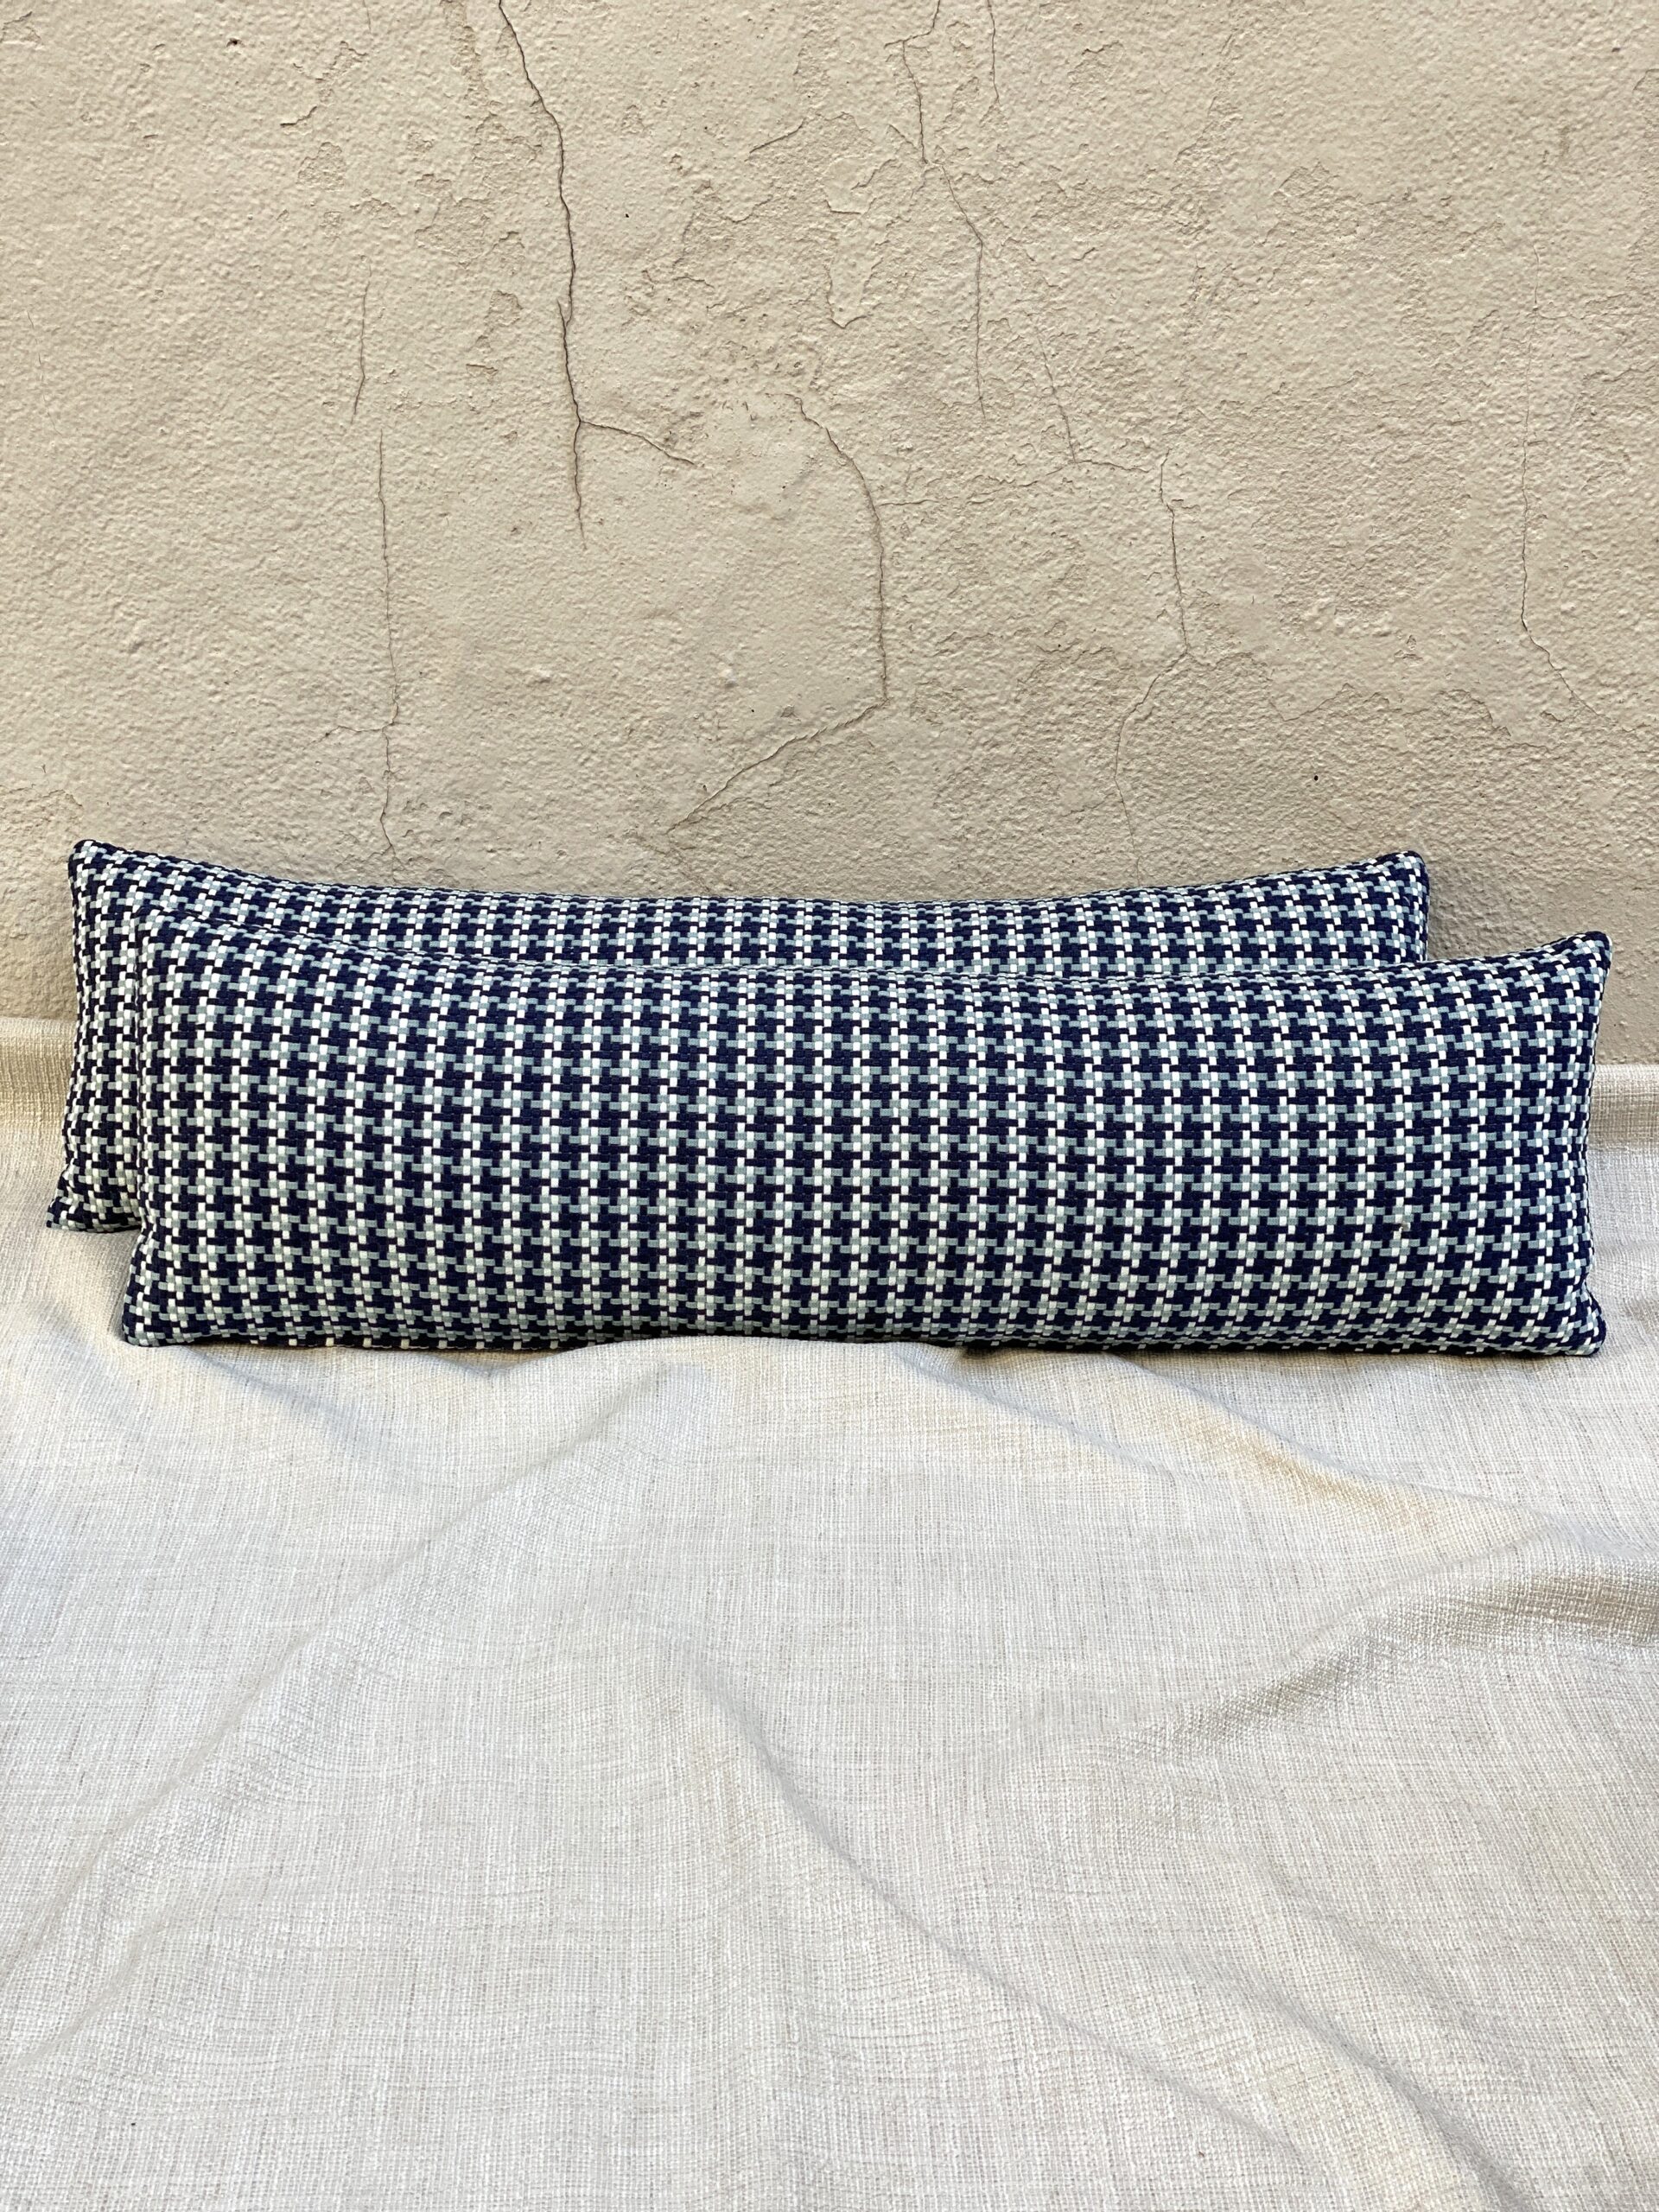 ROMO Outdoor Pillows